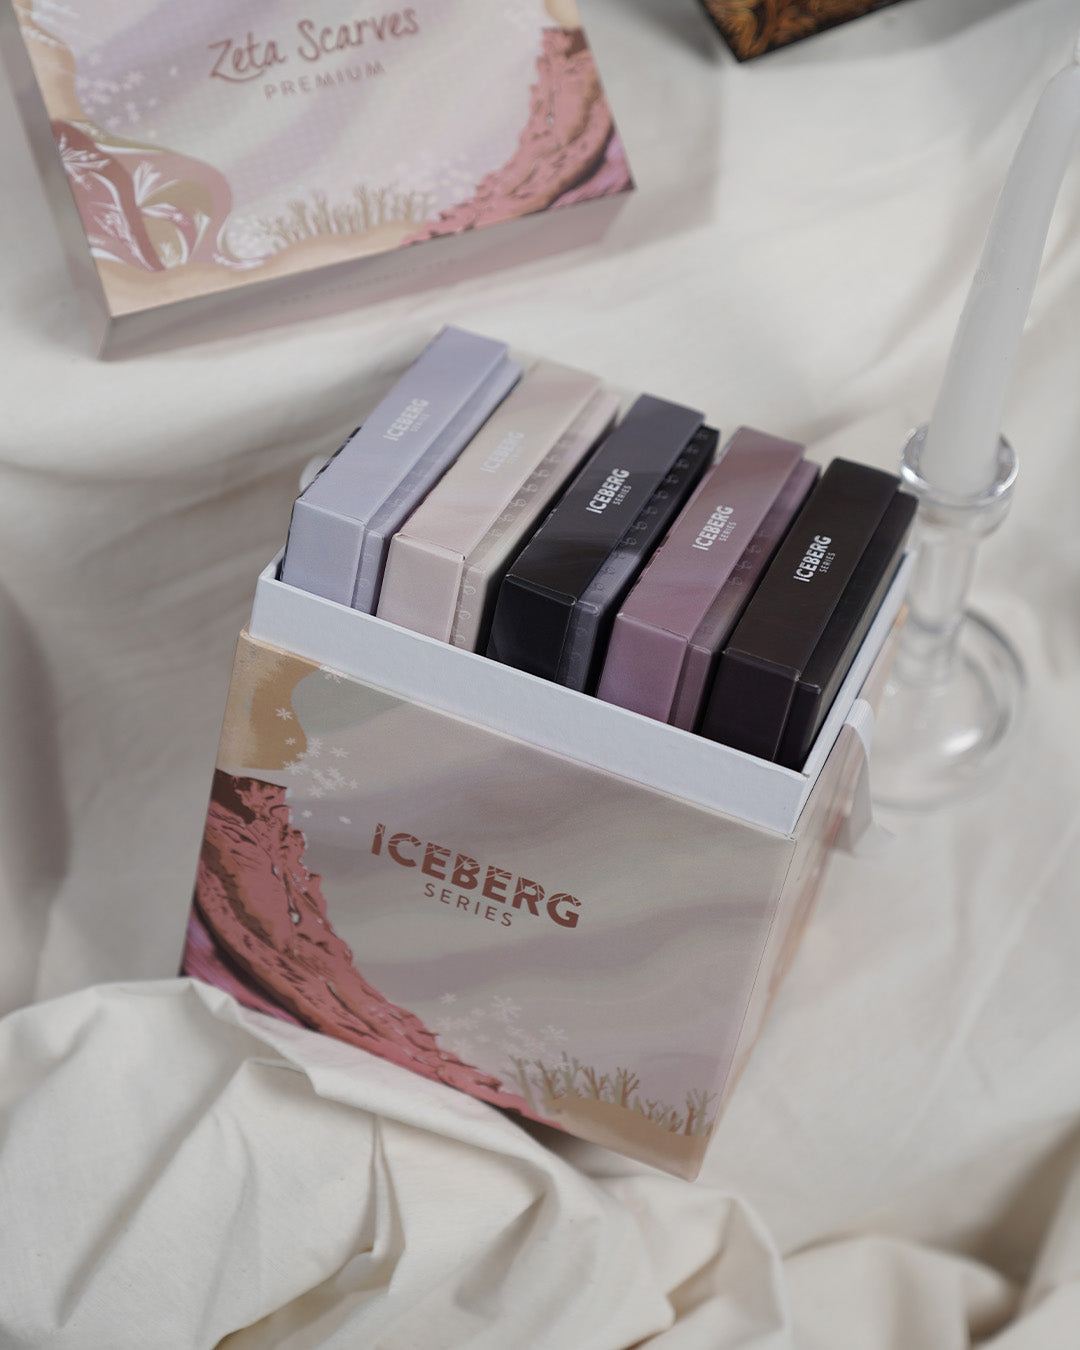 Iceberg Series - Bundling